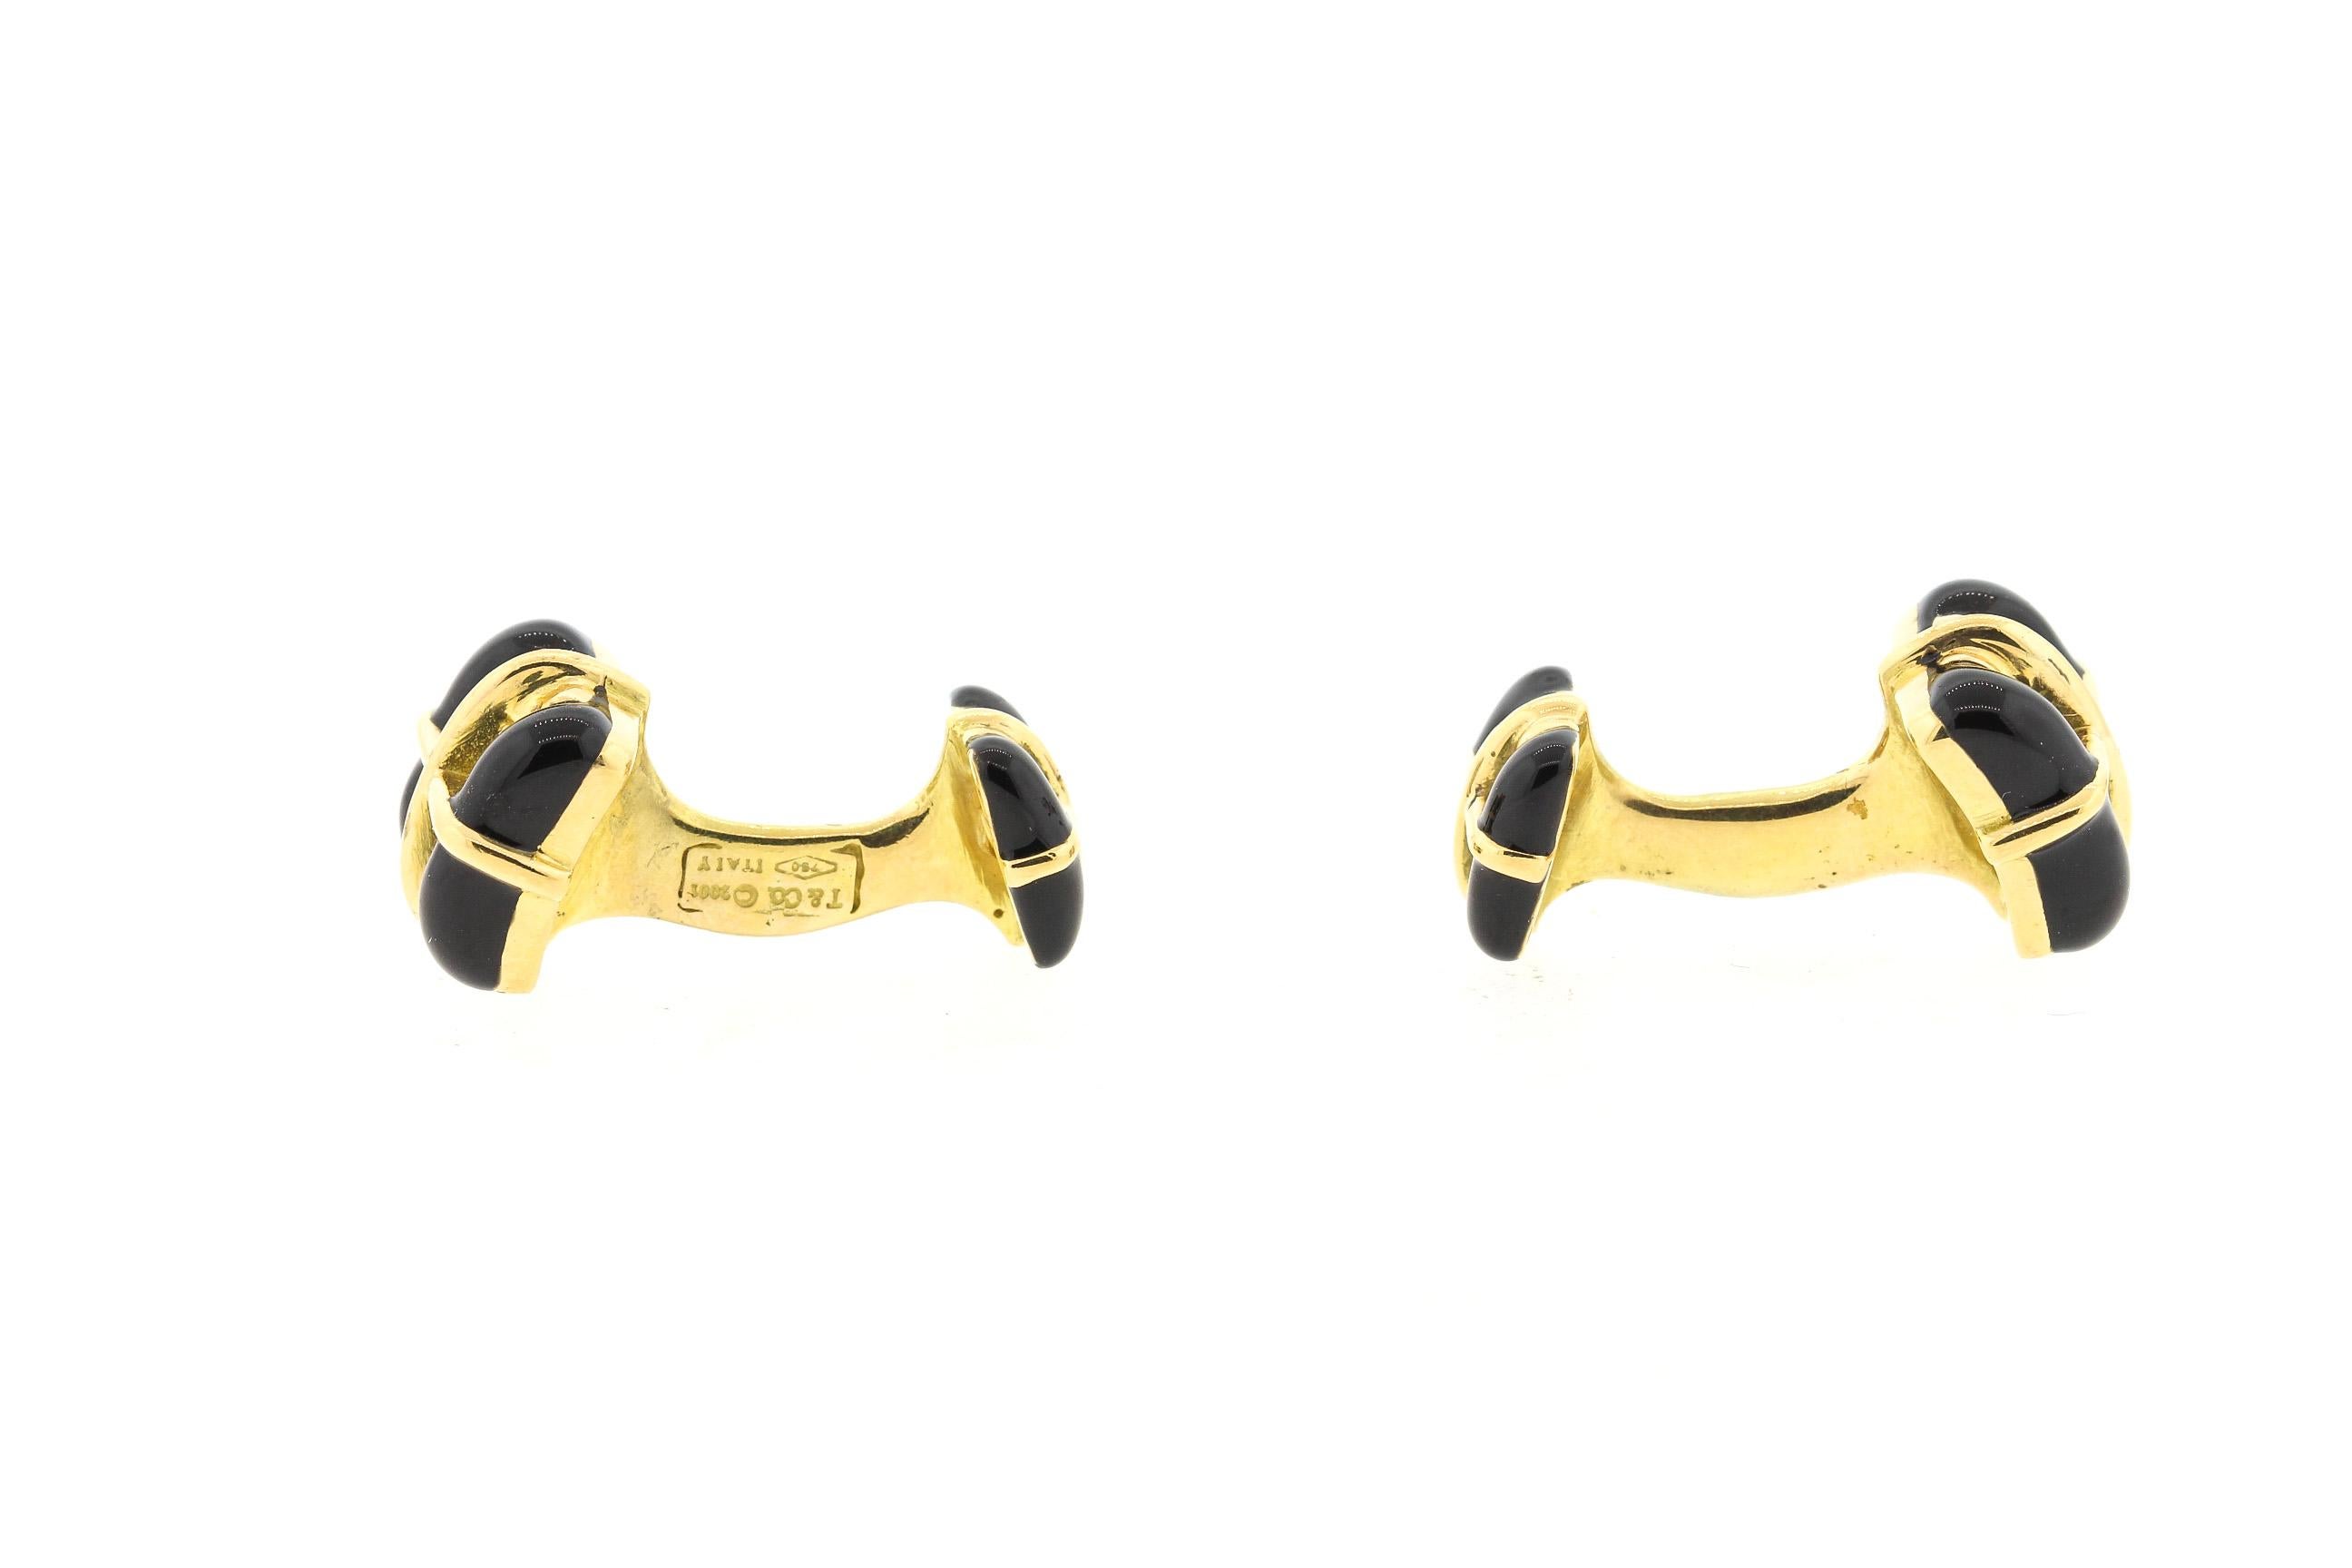 Une paire de boutons de manchette carrés vintage en or jaune 18k émaillé noir de Tiffany & Co, fabriqués en 2001. Ces boutons de manchette à double face sont distingués et peuvent être portés par les hommes et les femmes. Ils sont estampillés T&Co.